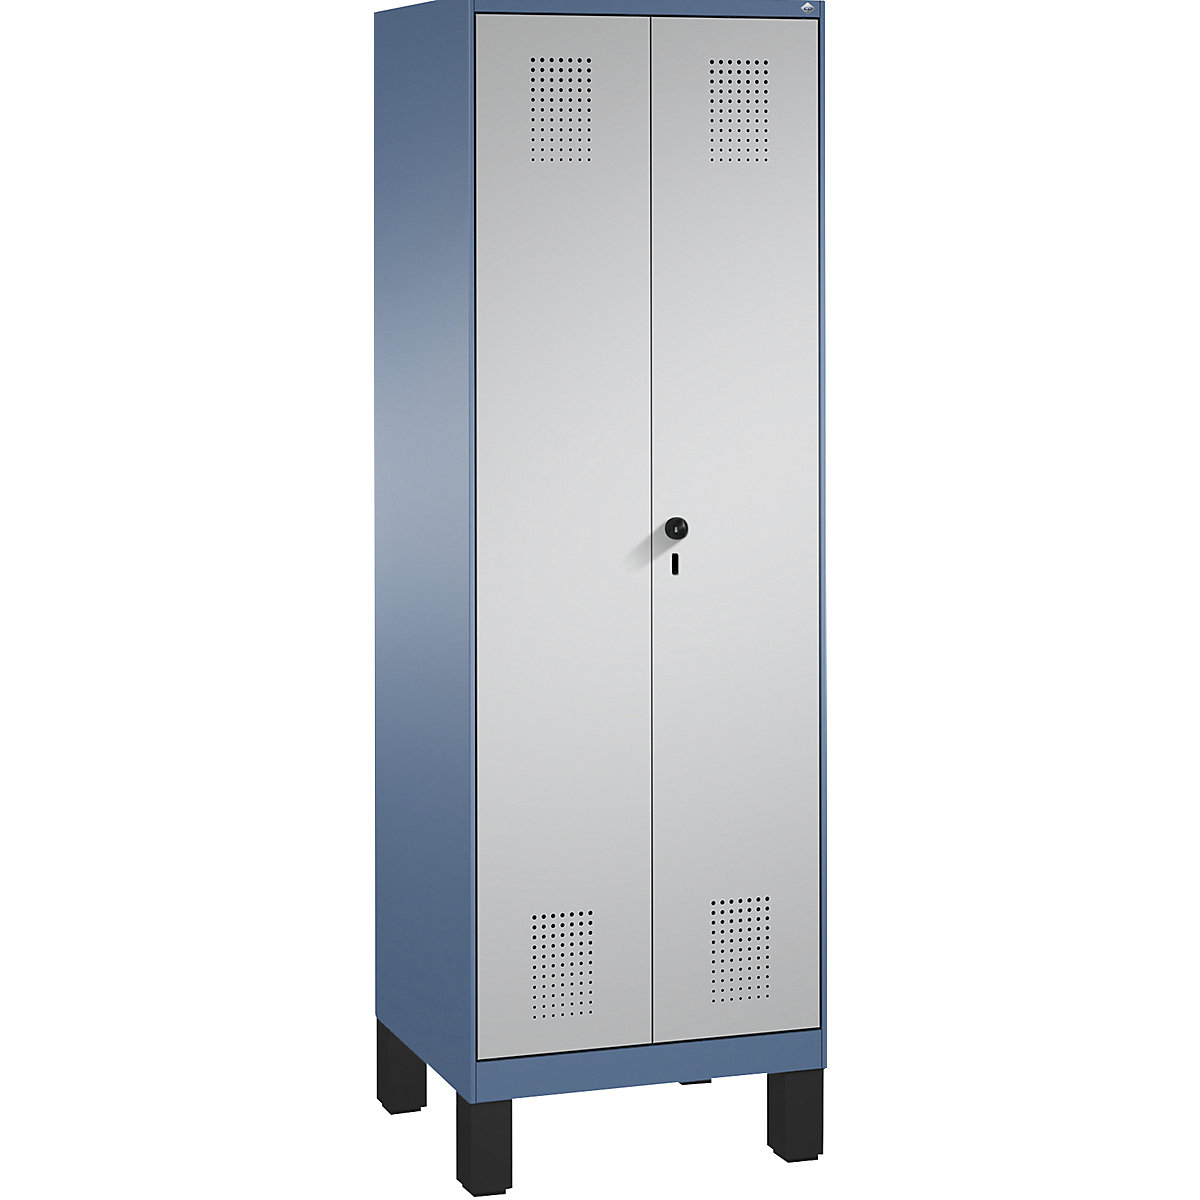 EVOLO tárolószekrény, egymásra csukódó ajtók, lábakkal – C+P, 1 fülke, szélesség 600 mm, 4 polccal, távolikék / fehéralumínium-3